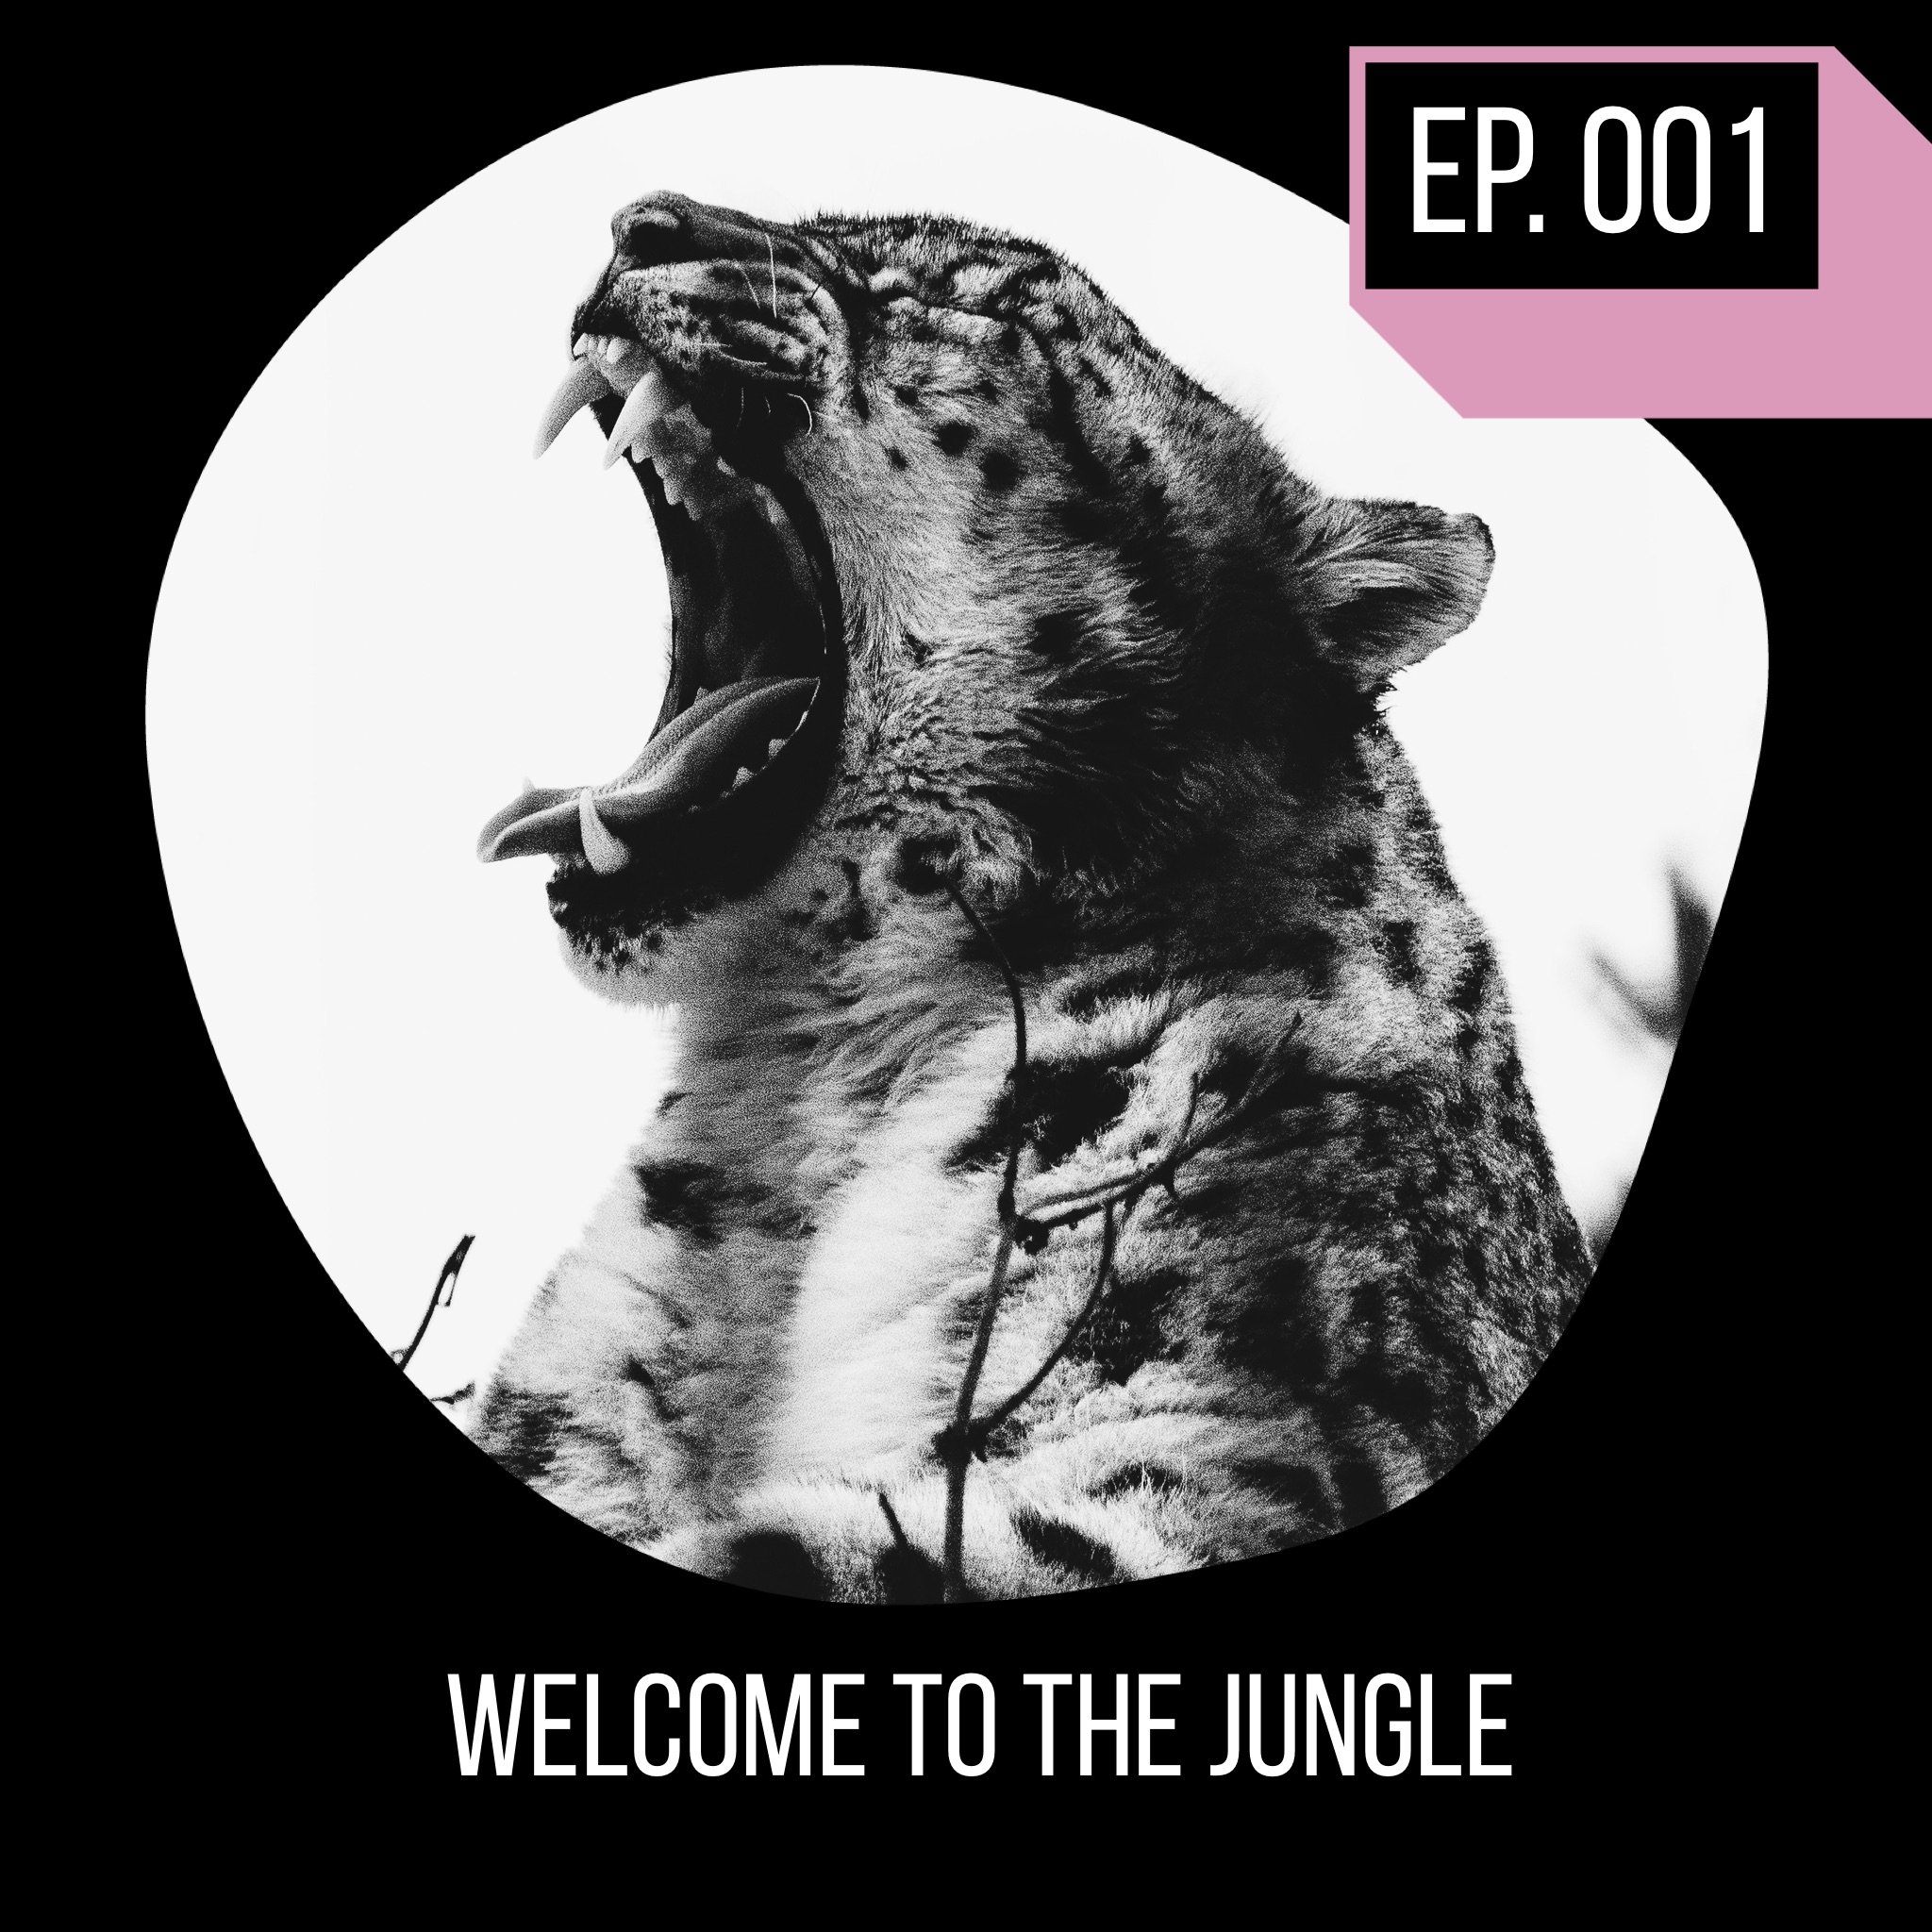 Jungle Roar  Podcast on Spotify